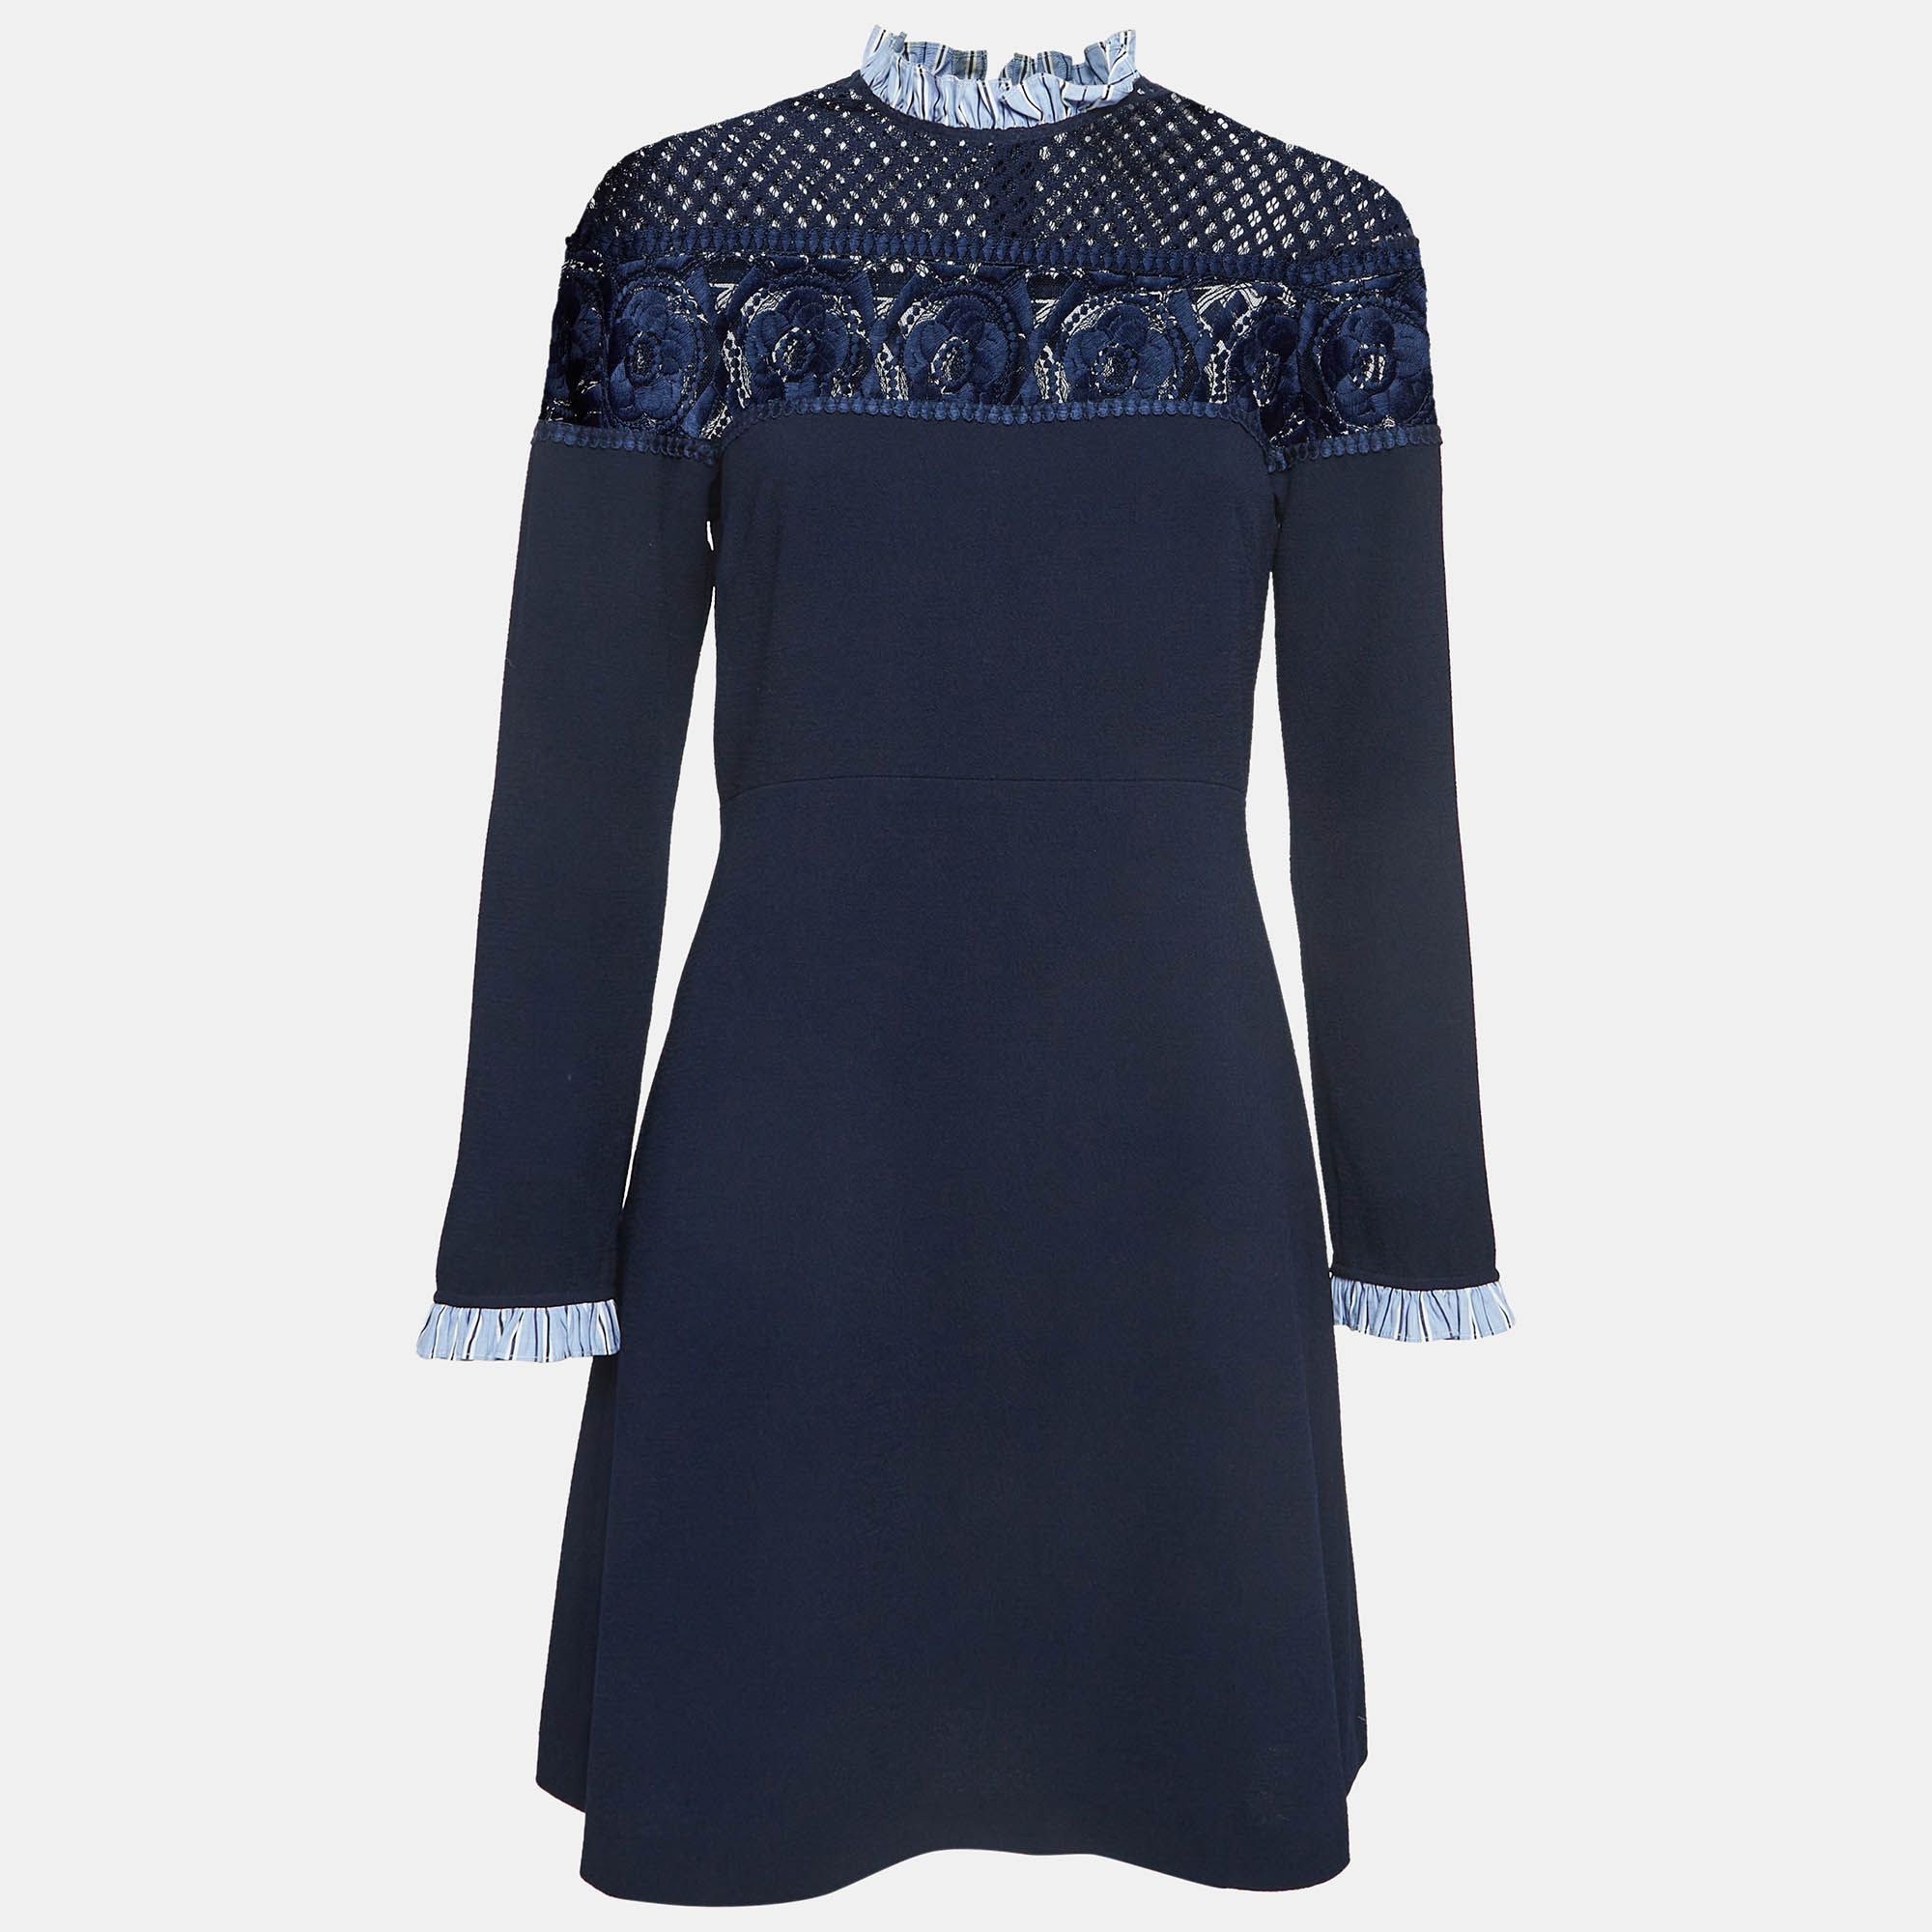 Sandro navy blue crepe & lace mini dress l